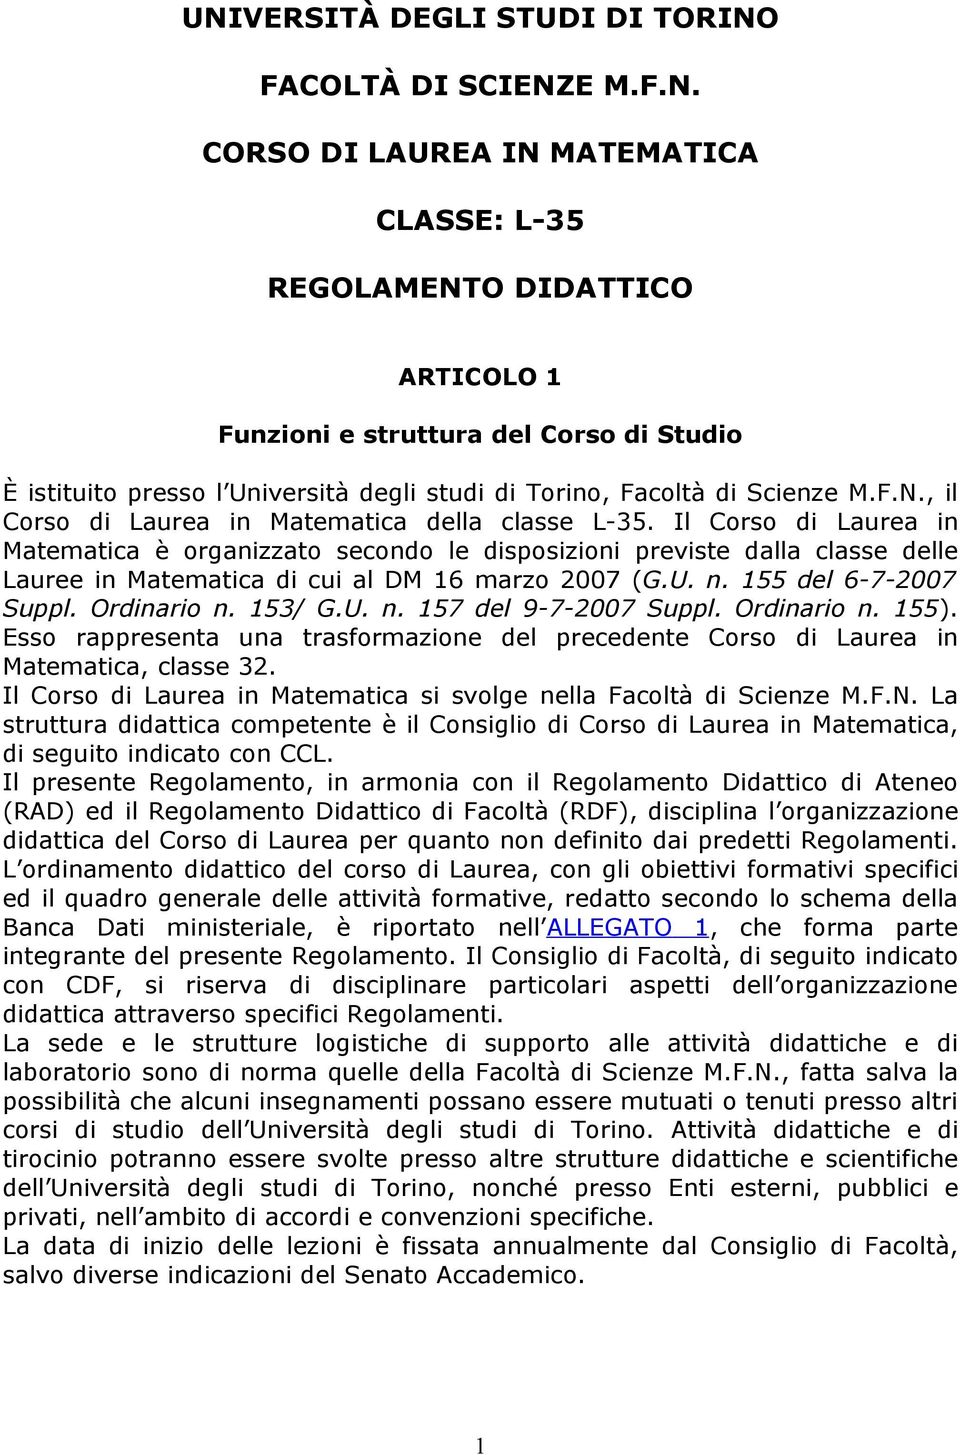 Il Corso di Laurea in Matematica è organizzato secondo le disposizioni previste dalla classe delle Lauree in Matematica di cui al DM 16 marzo 2007 (G.U. n. 155 del 6-7-2007 Suppl. Ordinario n. 153/ G.